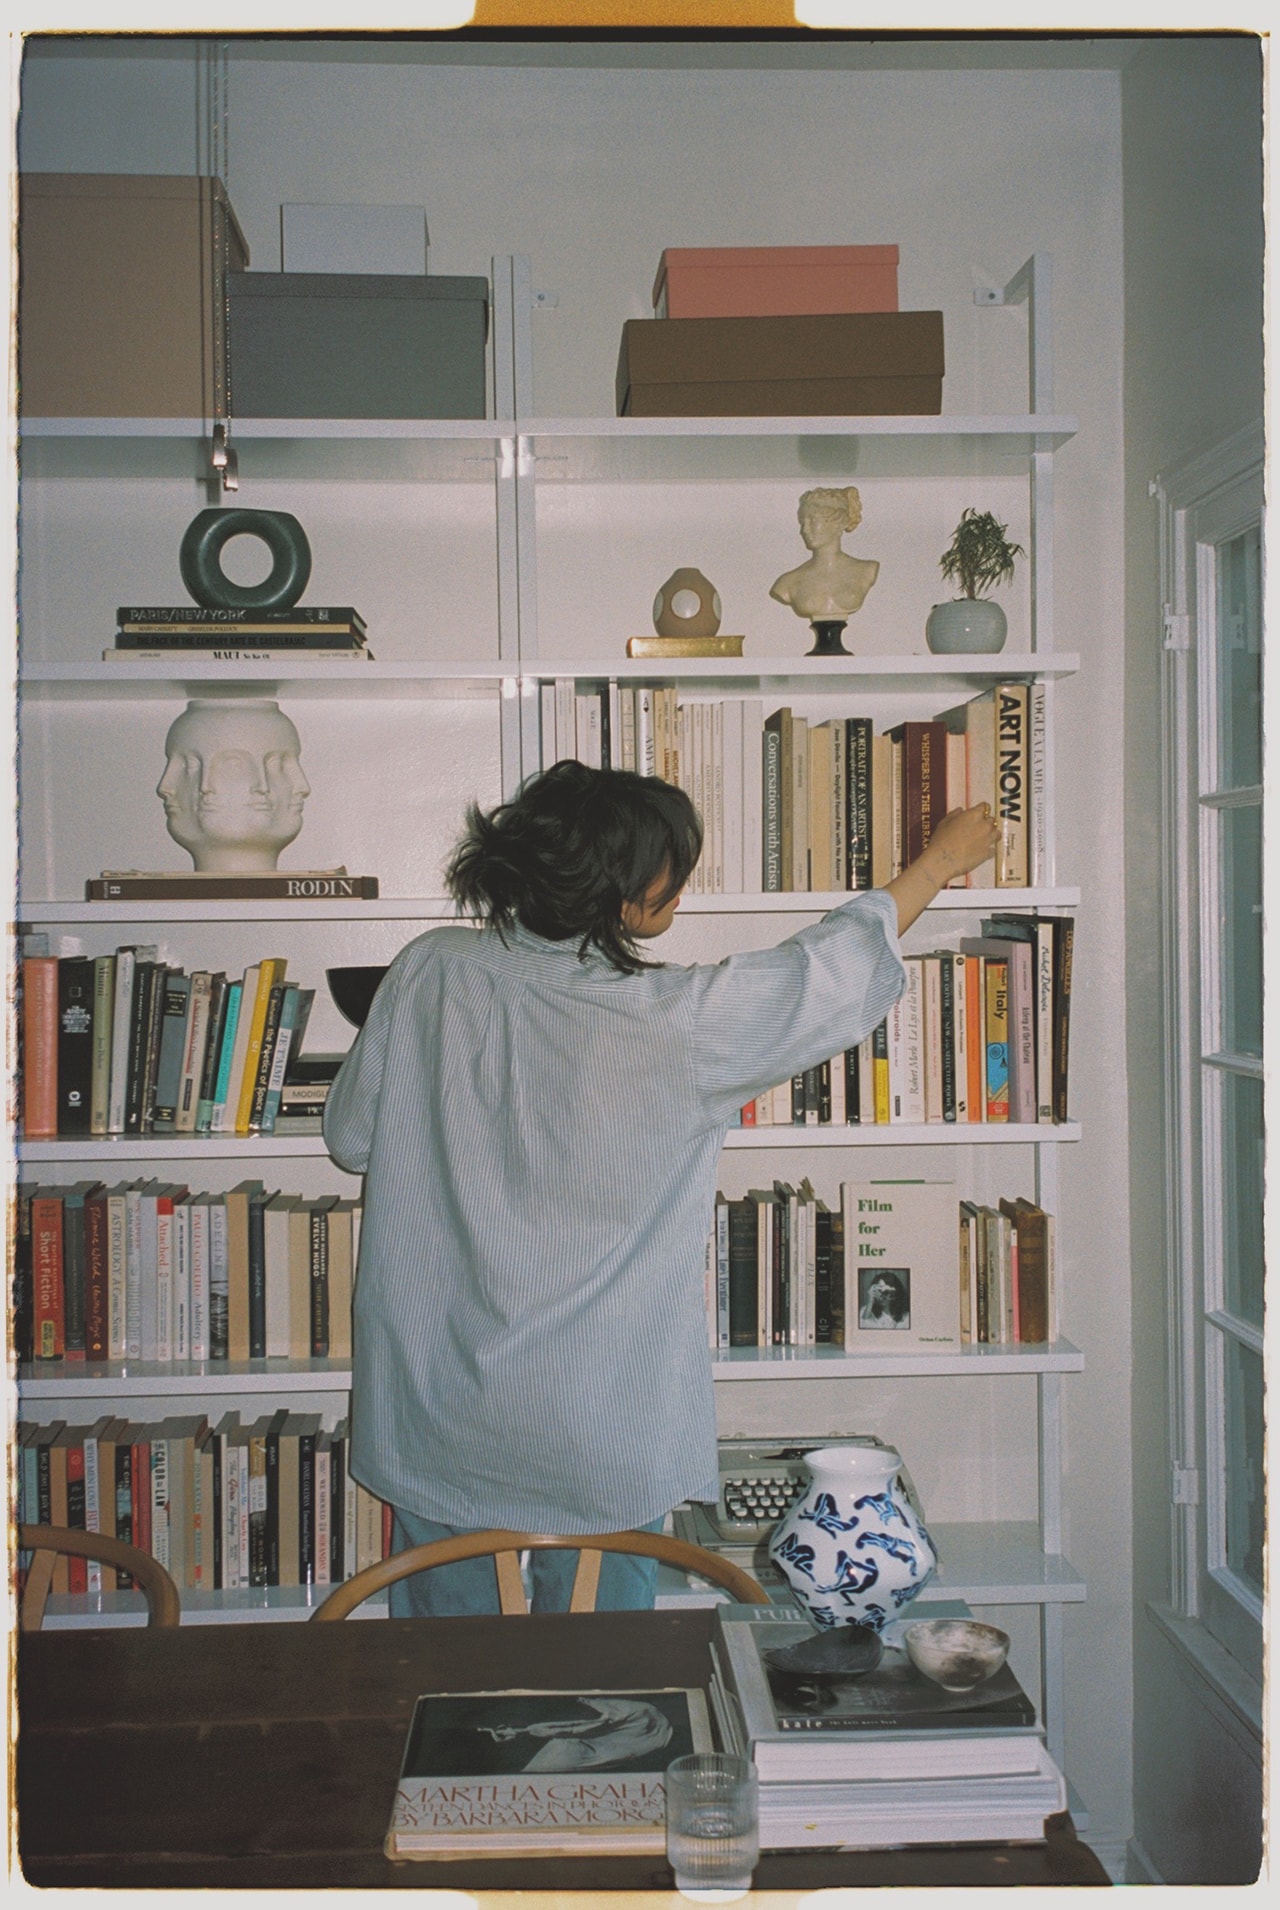 Orion Carloto Film for Her Author Poet Writer Social Media Influencer Home Book Shelf